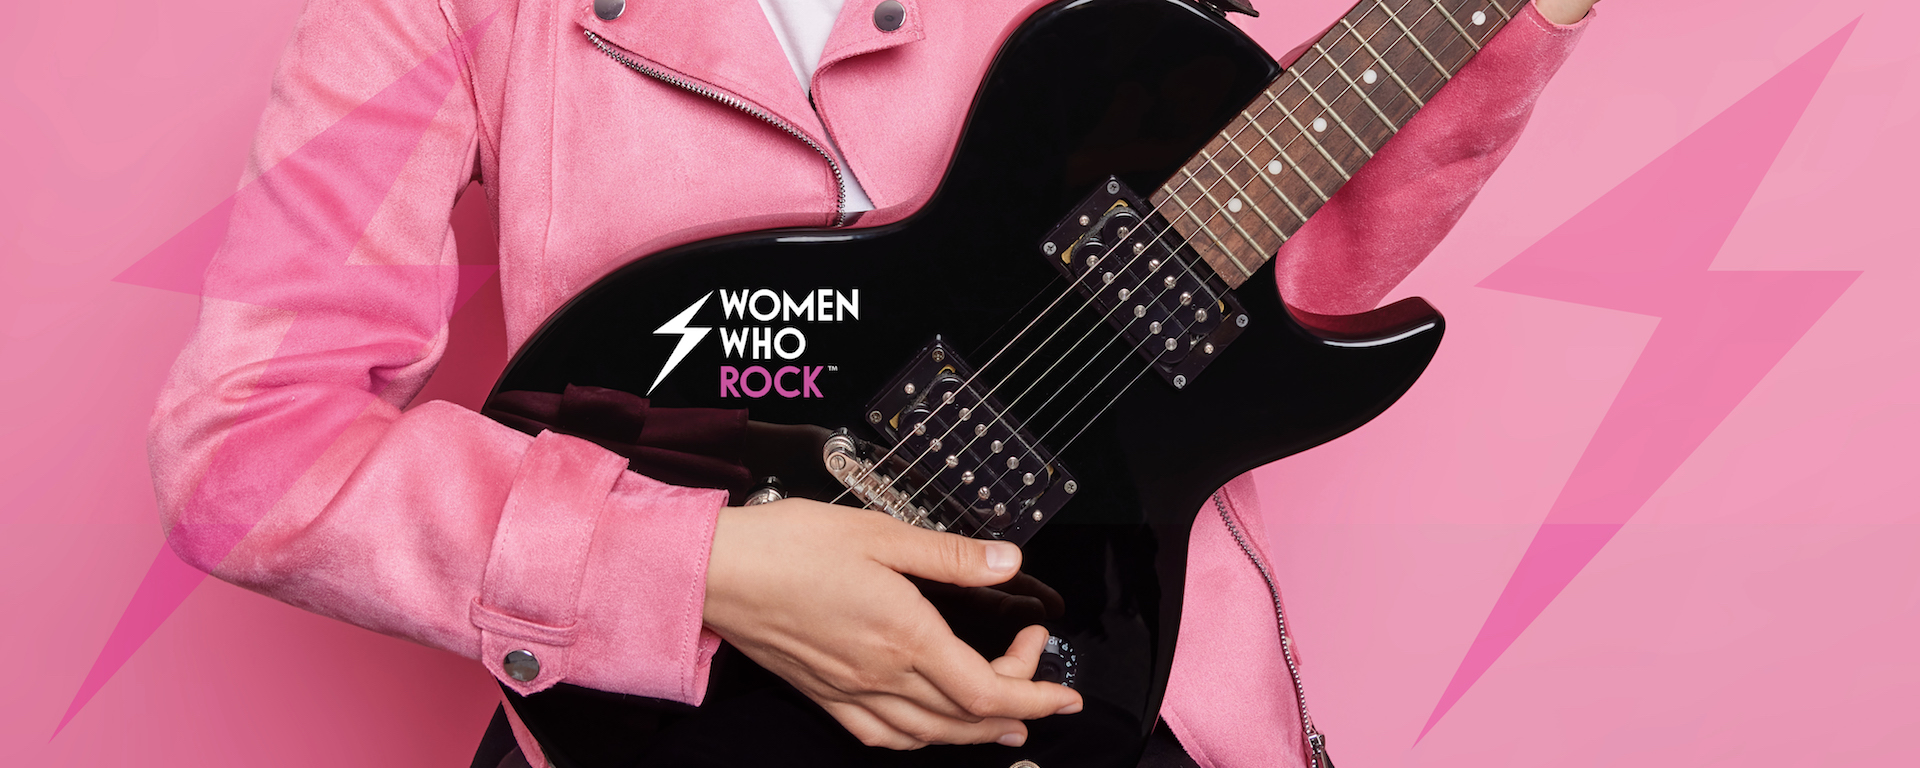 women who rock